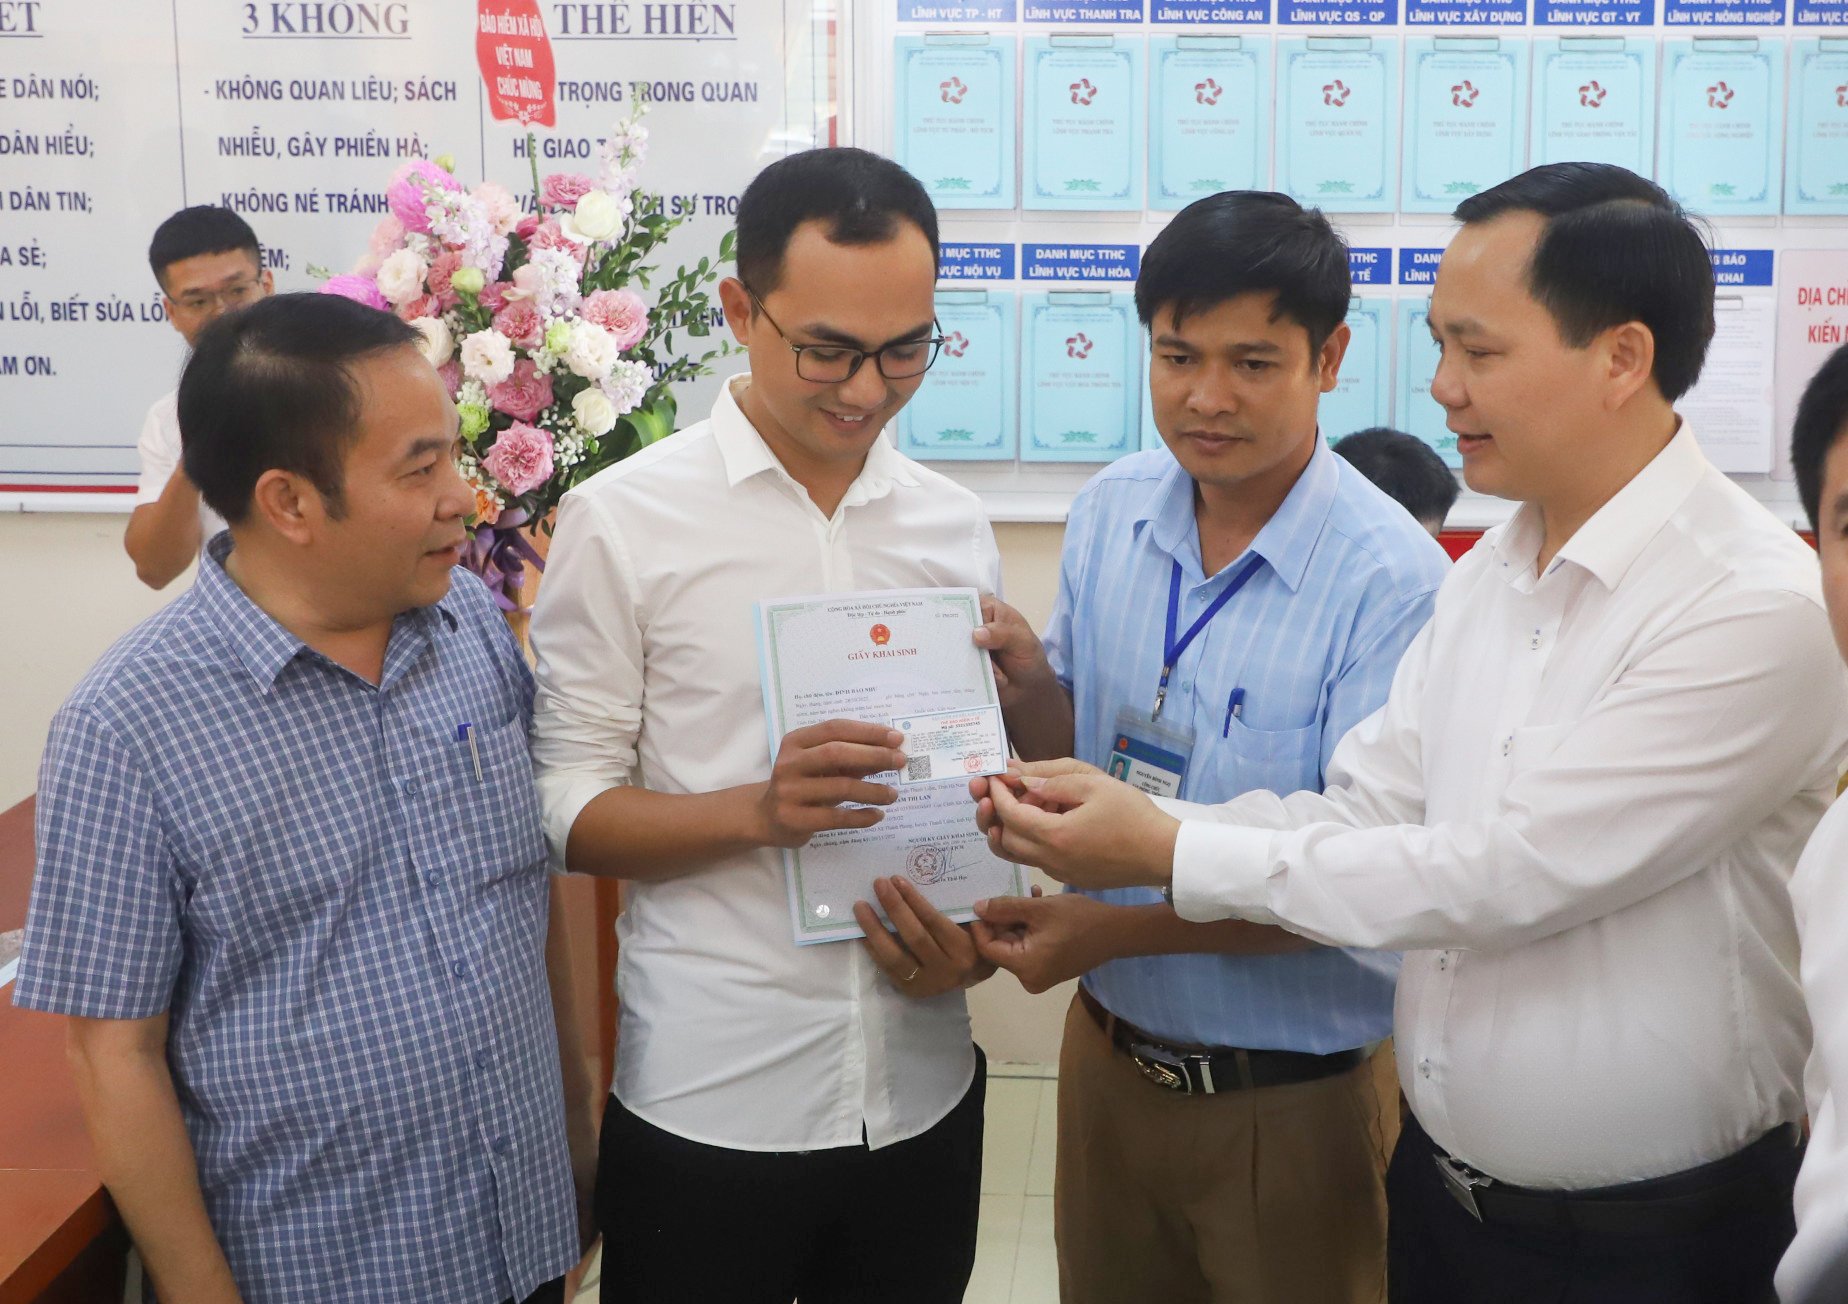 Phó Tổng giám đốc BHXH Việt Nam Chu Mạnh Sinh trao thẻ BHYT của bé gái cho anh Đinh Tiến Hoàng.